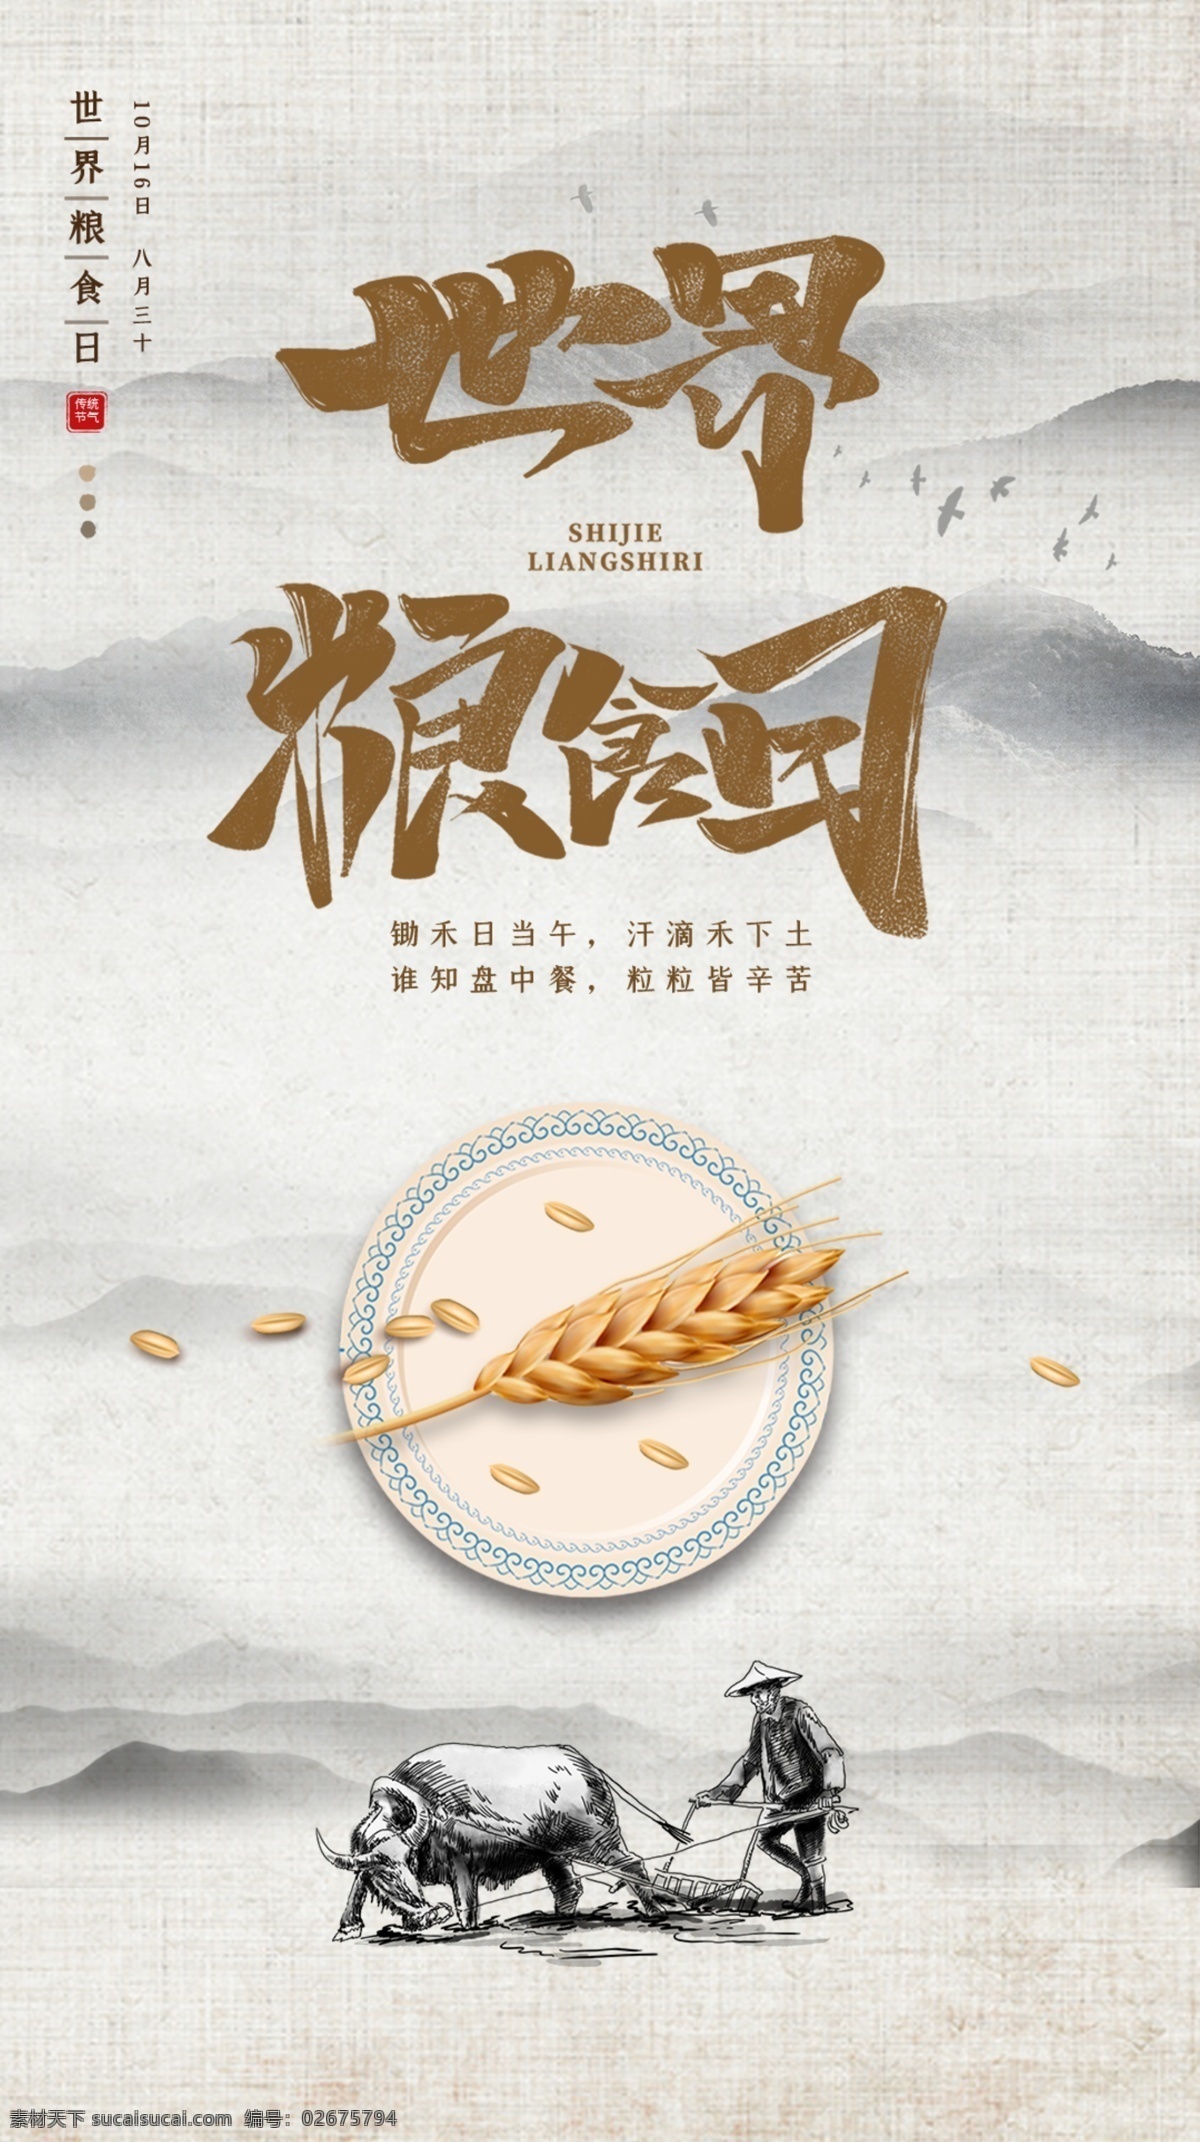 中国 风 水墨 简约 世界 粮食 日 手机图片 中国风 水墨风 粮食日 手机 海报 vi设计